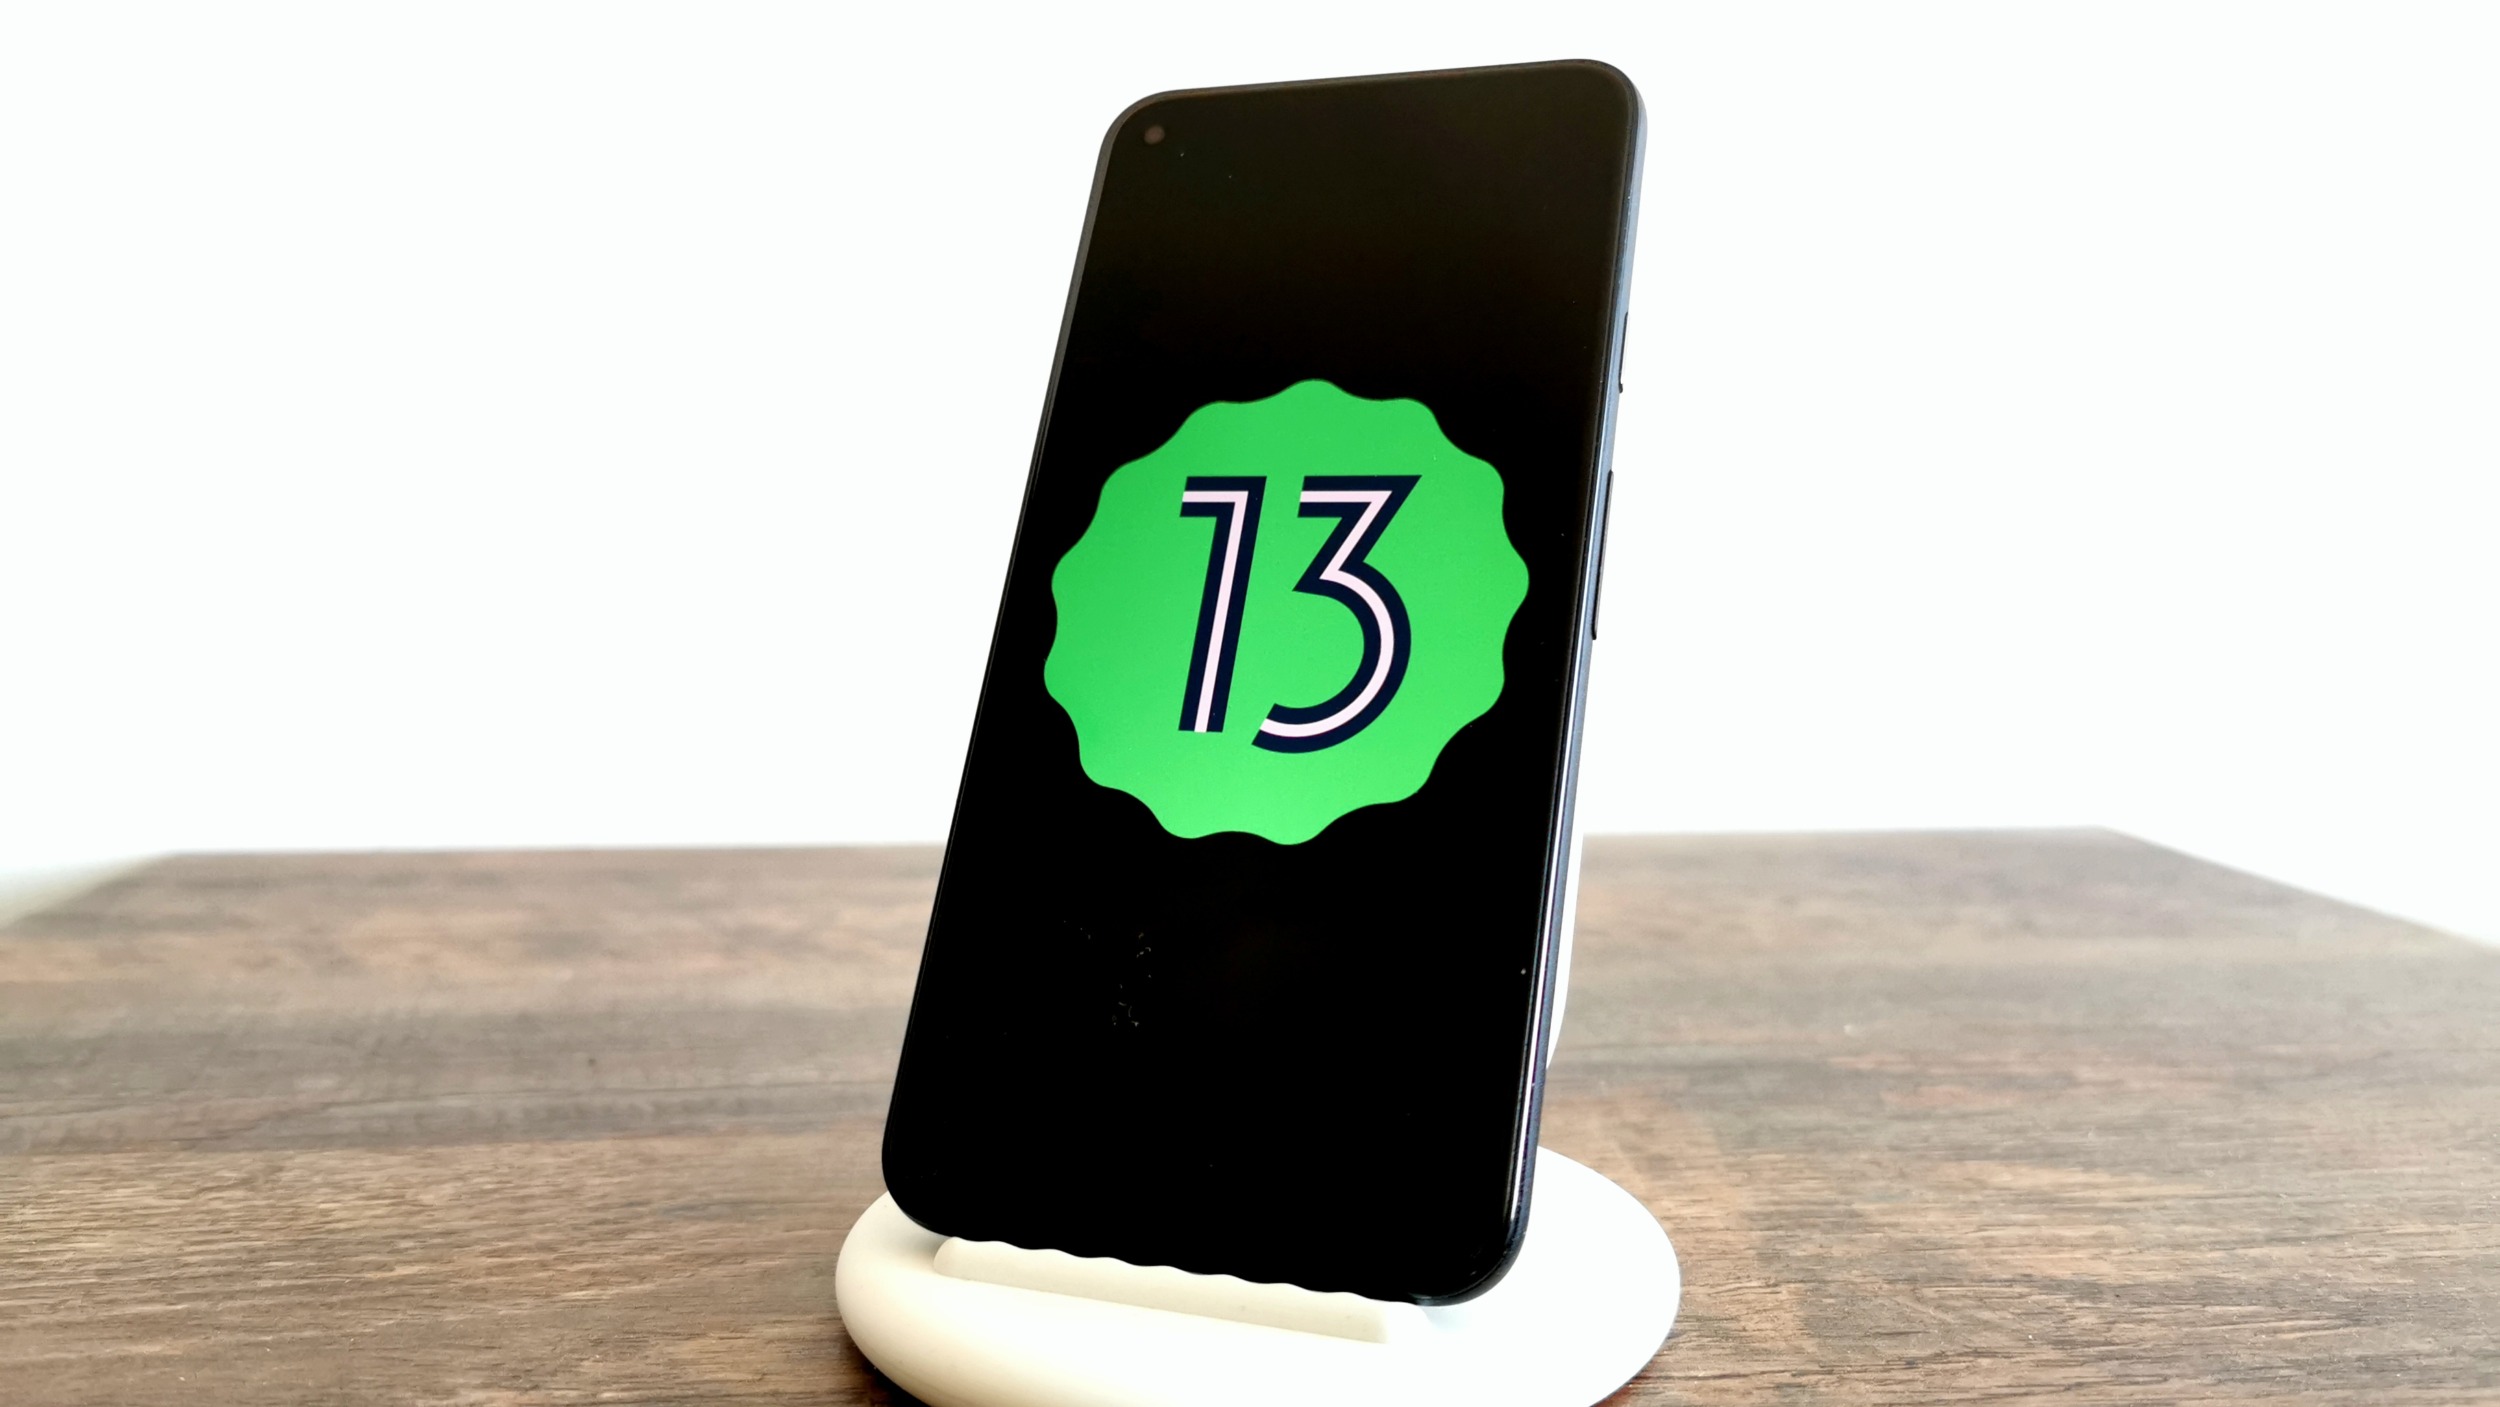 Novinky v Androidu 13 – ovládání, rozlišení a další vychytávky